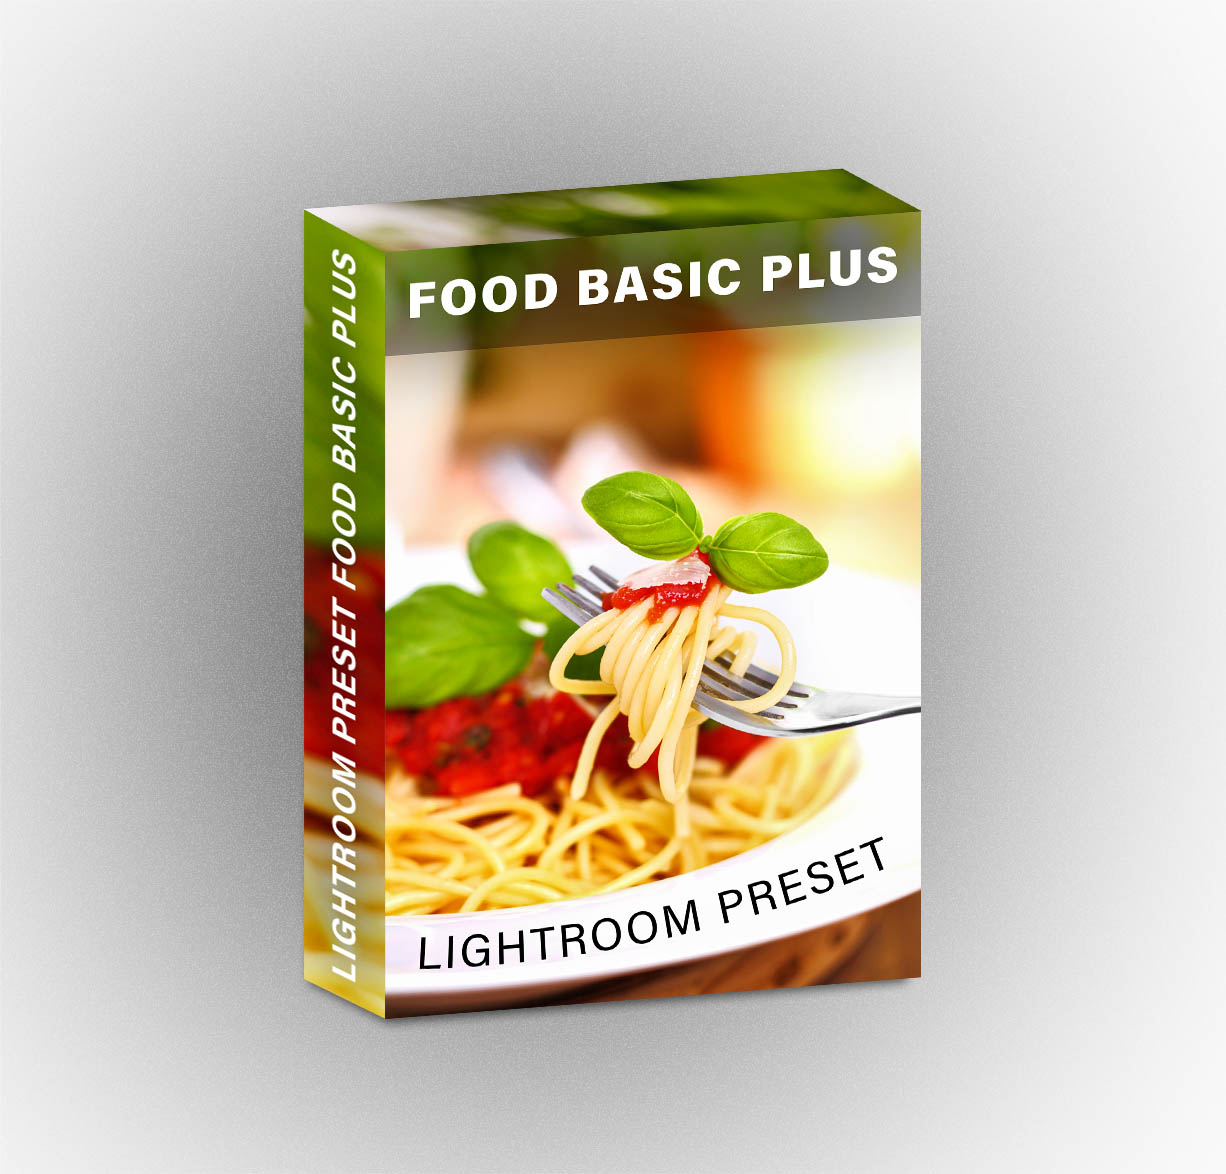 Lightroom Preset Food Basic Plus